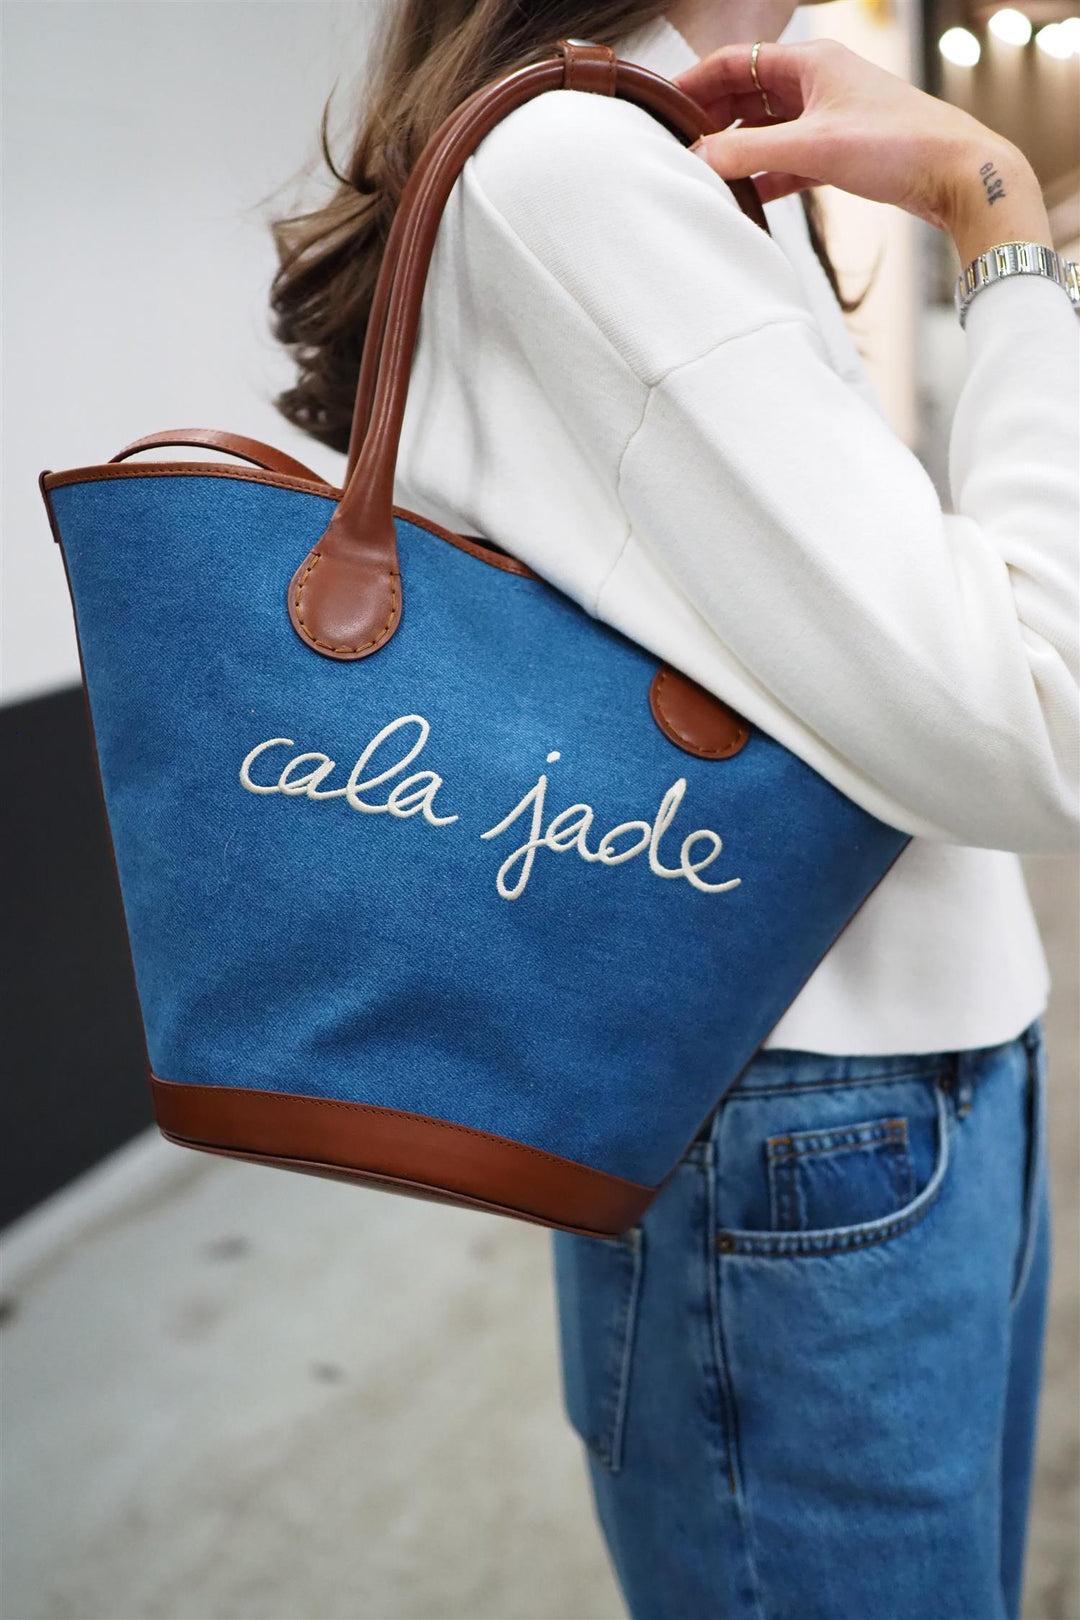 Cala Jade - Sandhi Blue Jeans Tote Bag